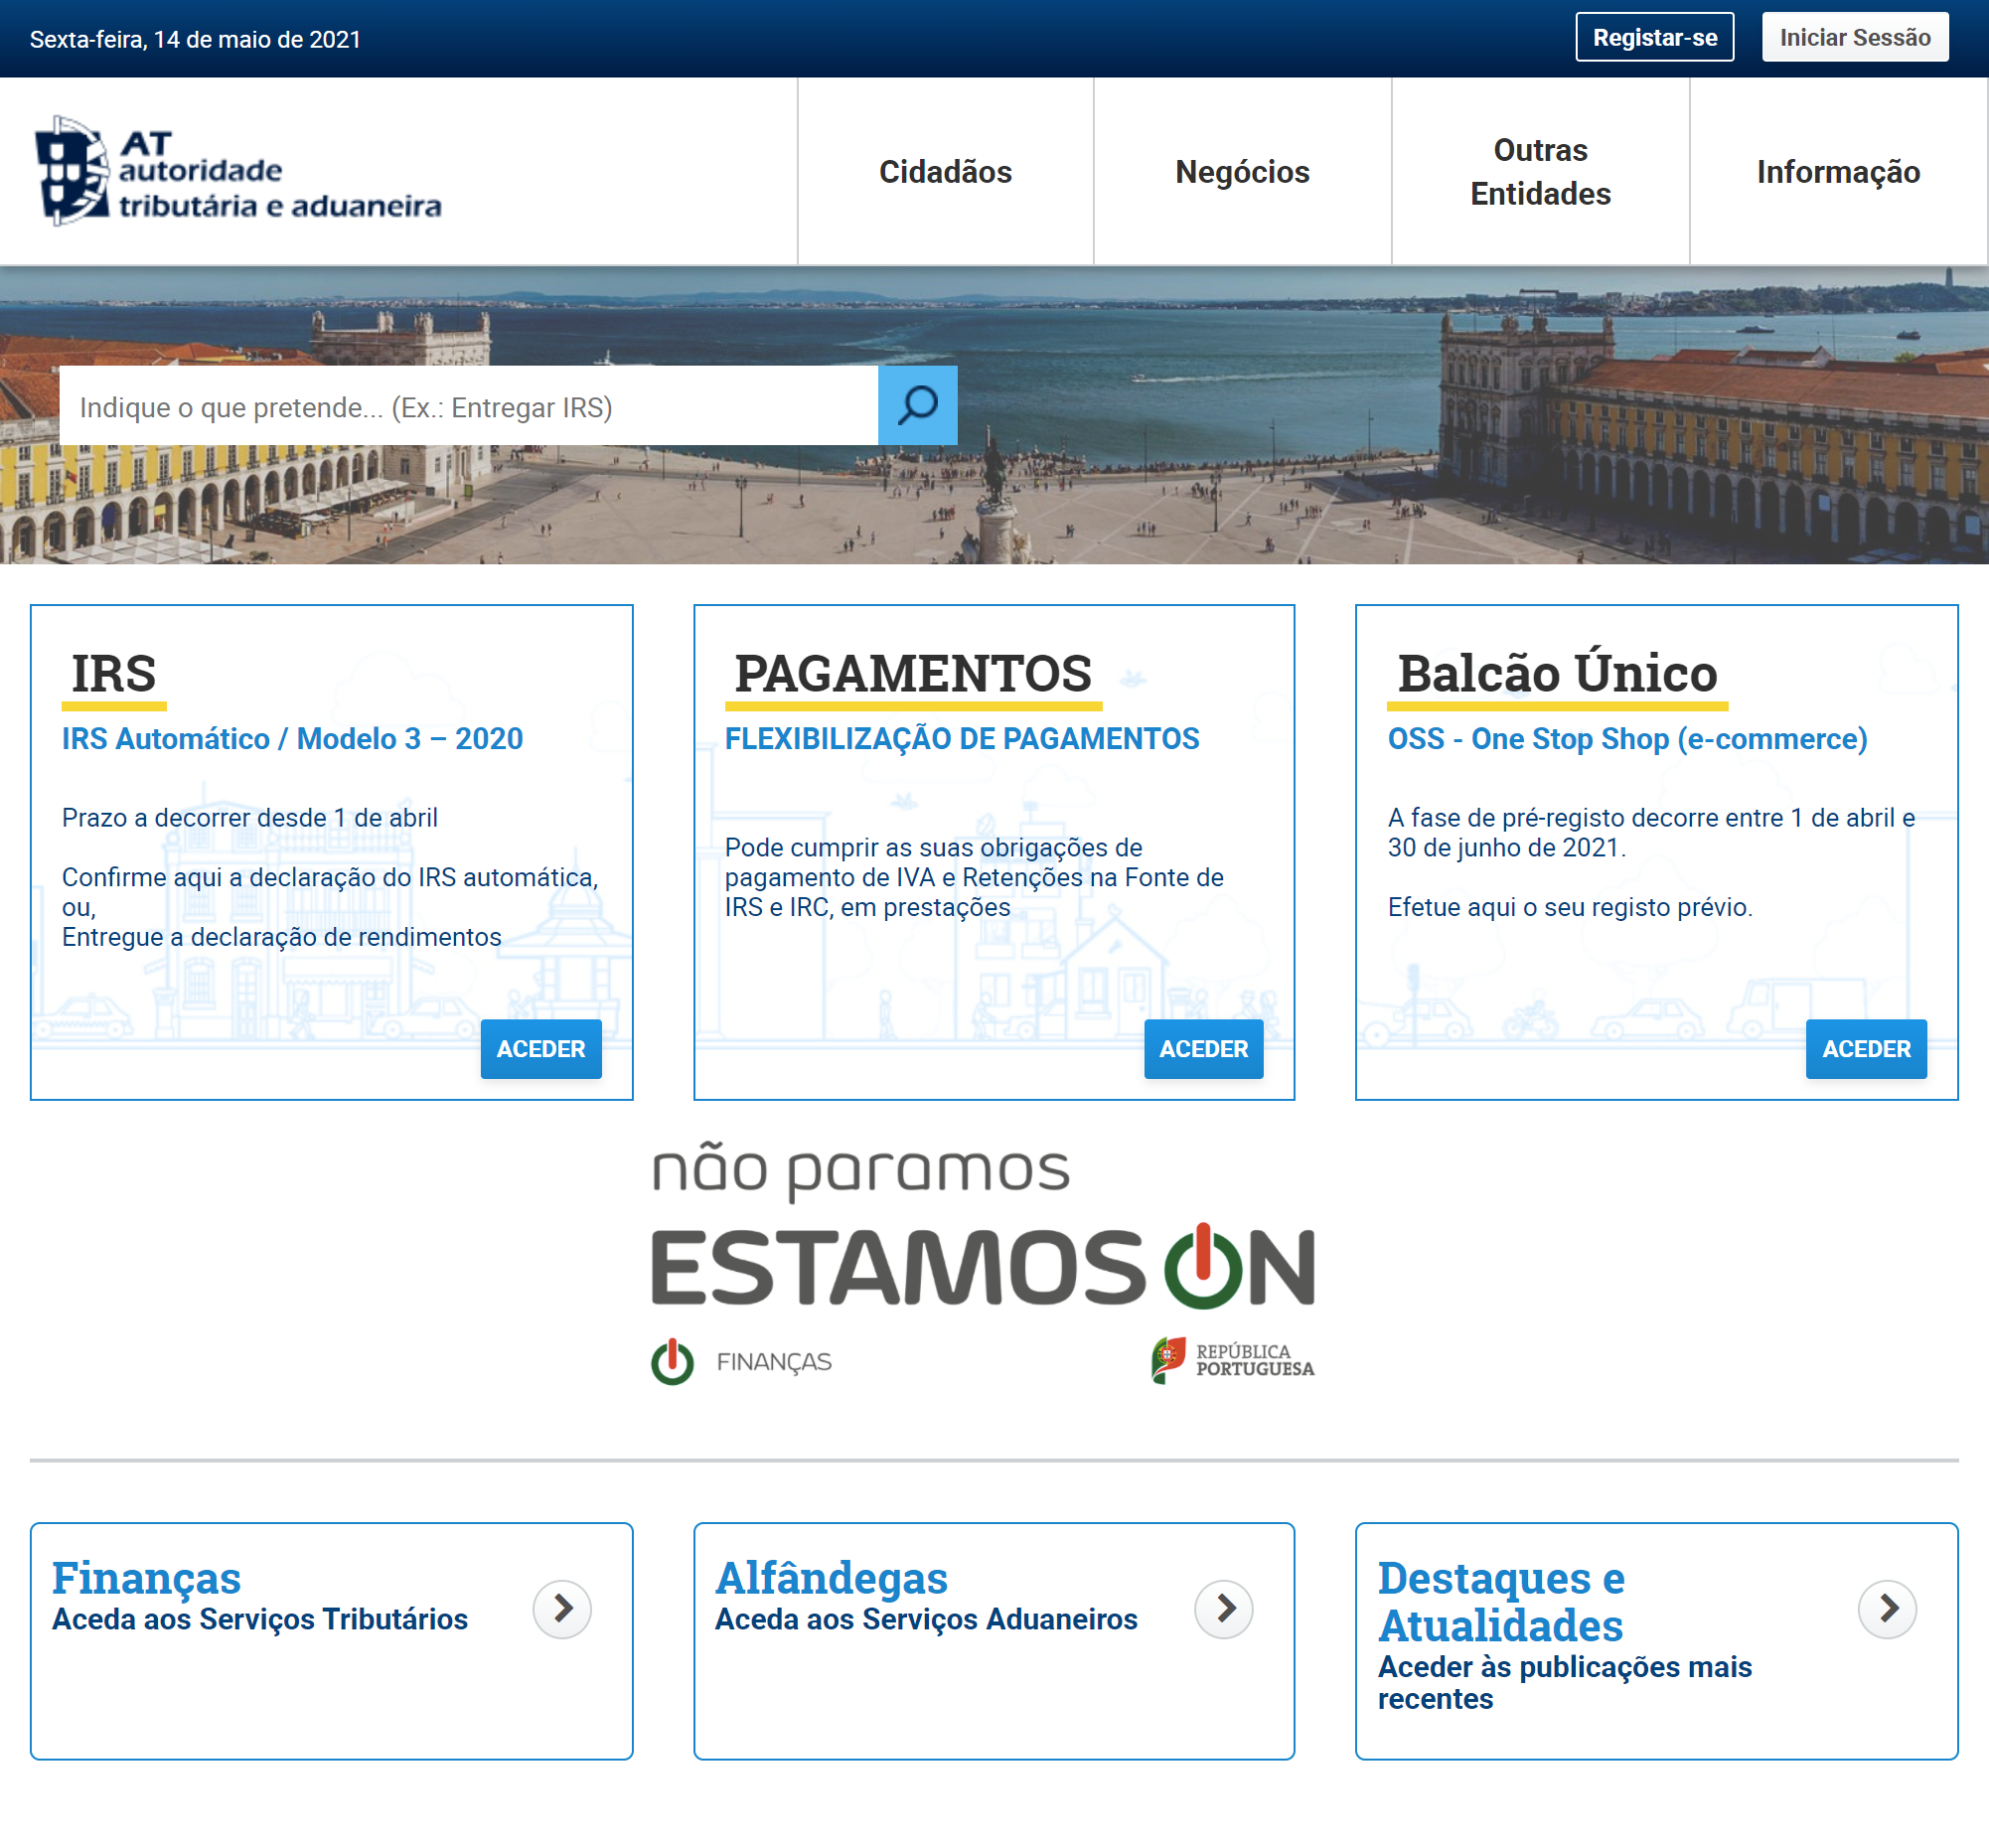 Сайт Autoridade Tributária e Aduaneira — налоговой службы. На мой взгляд, это самый адекватный госорган в Португалии: практически все действия можно совершить онлайн